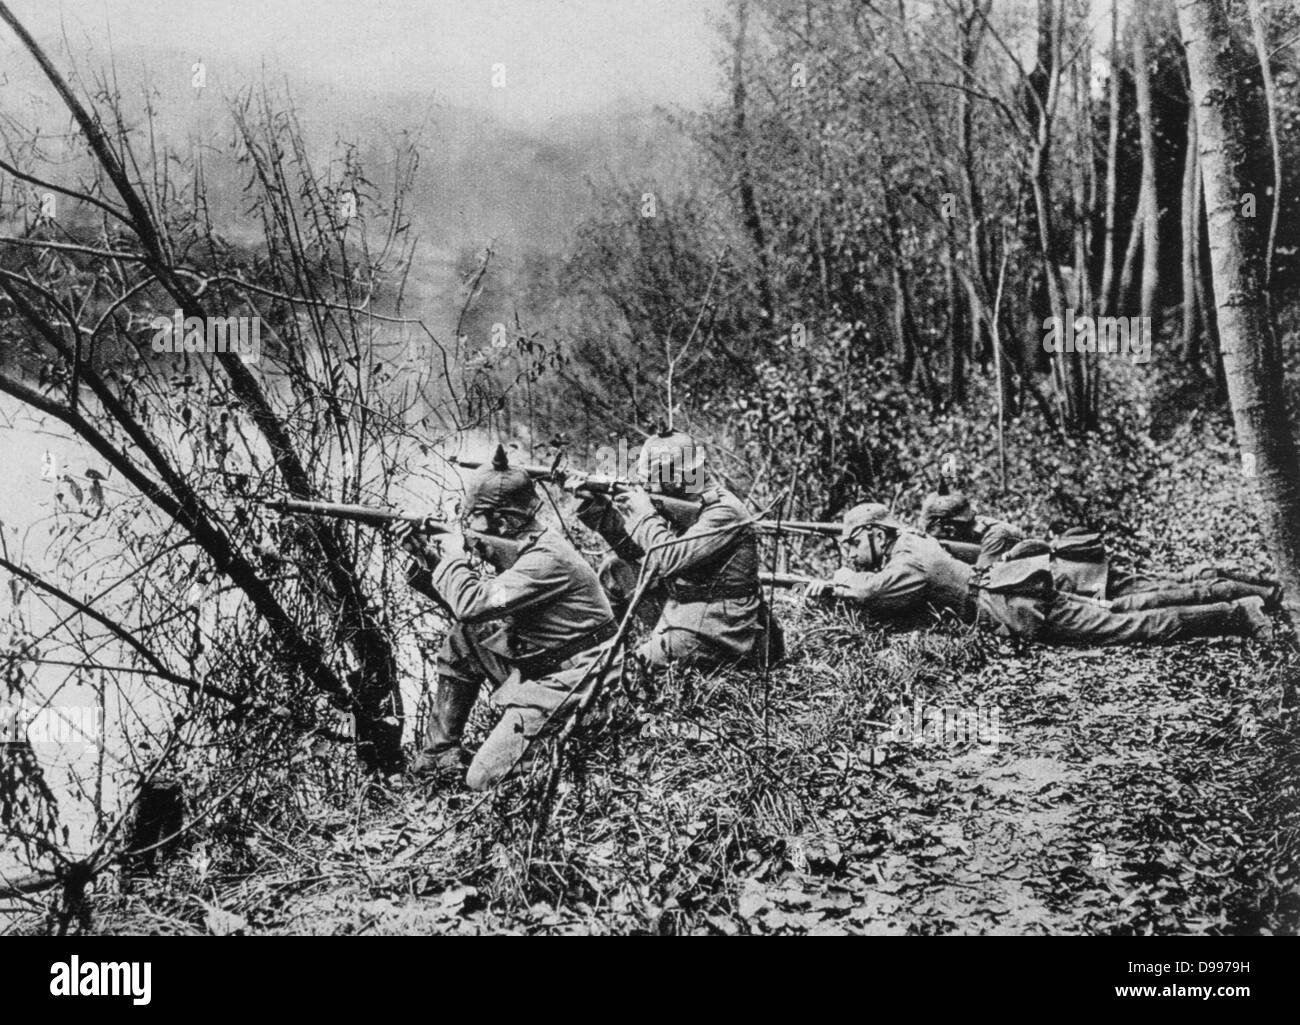 Der erste Weltkrieg 1914-1918: Deutsche Gewehrschützen, tragen pickelhelms, Brennen über den Fluss Aisne, Frankreich, 1915. Militär, Soldaten, Waffen, Smallarms Stockfoto